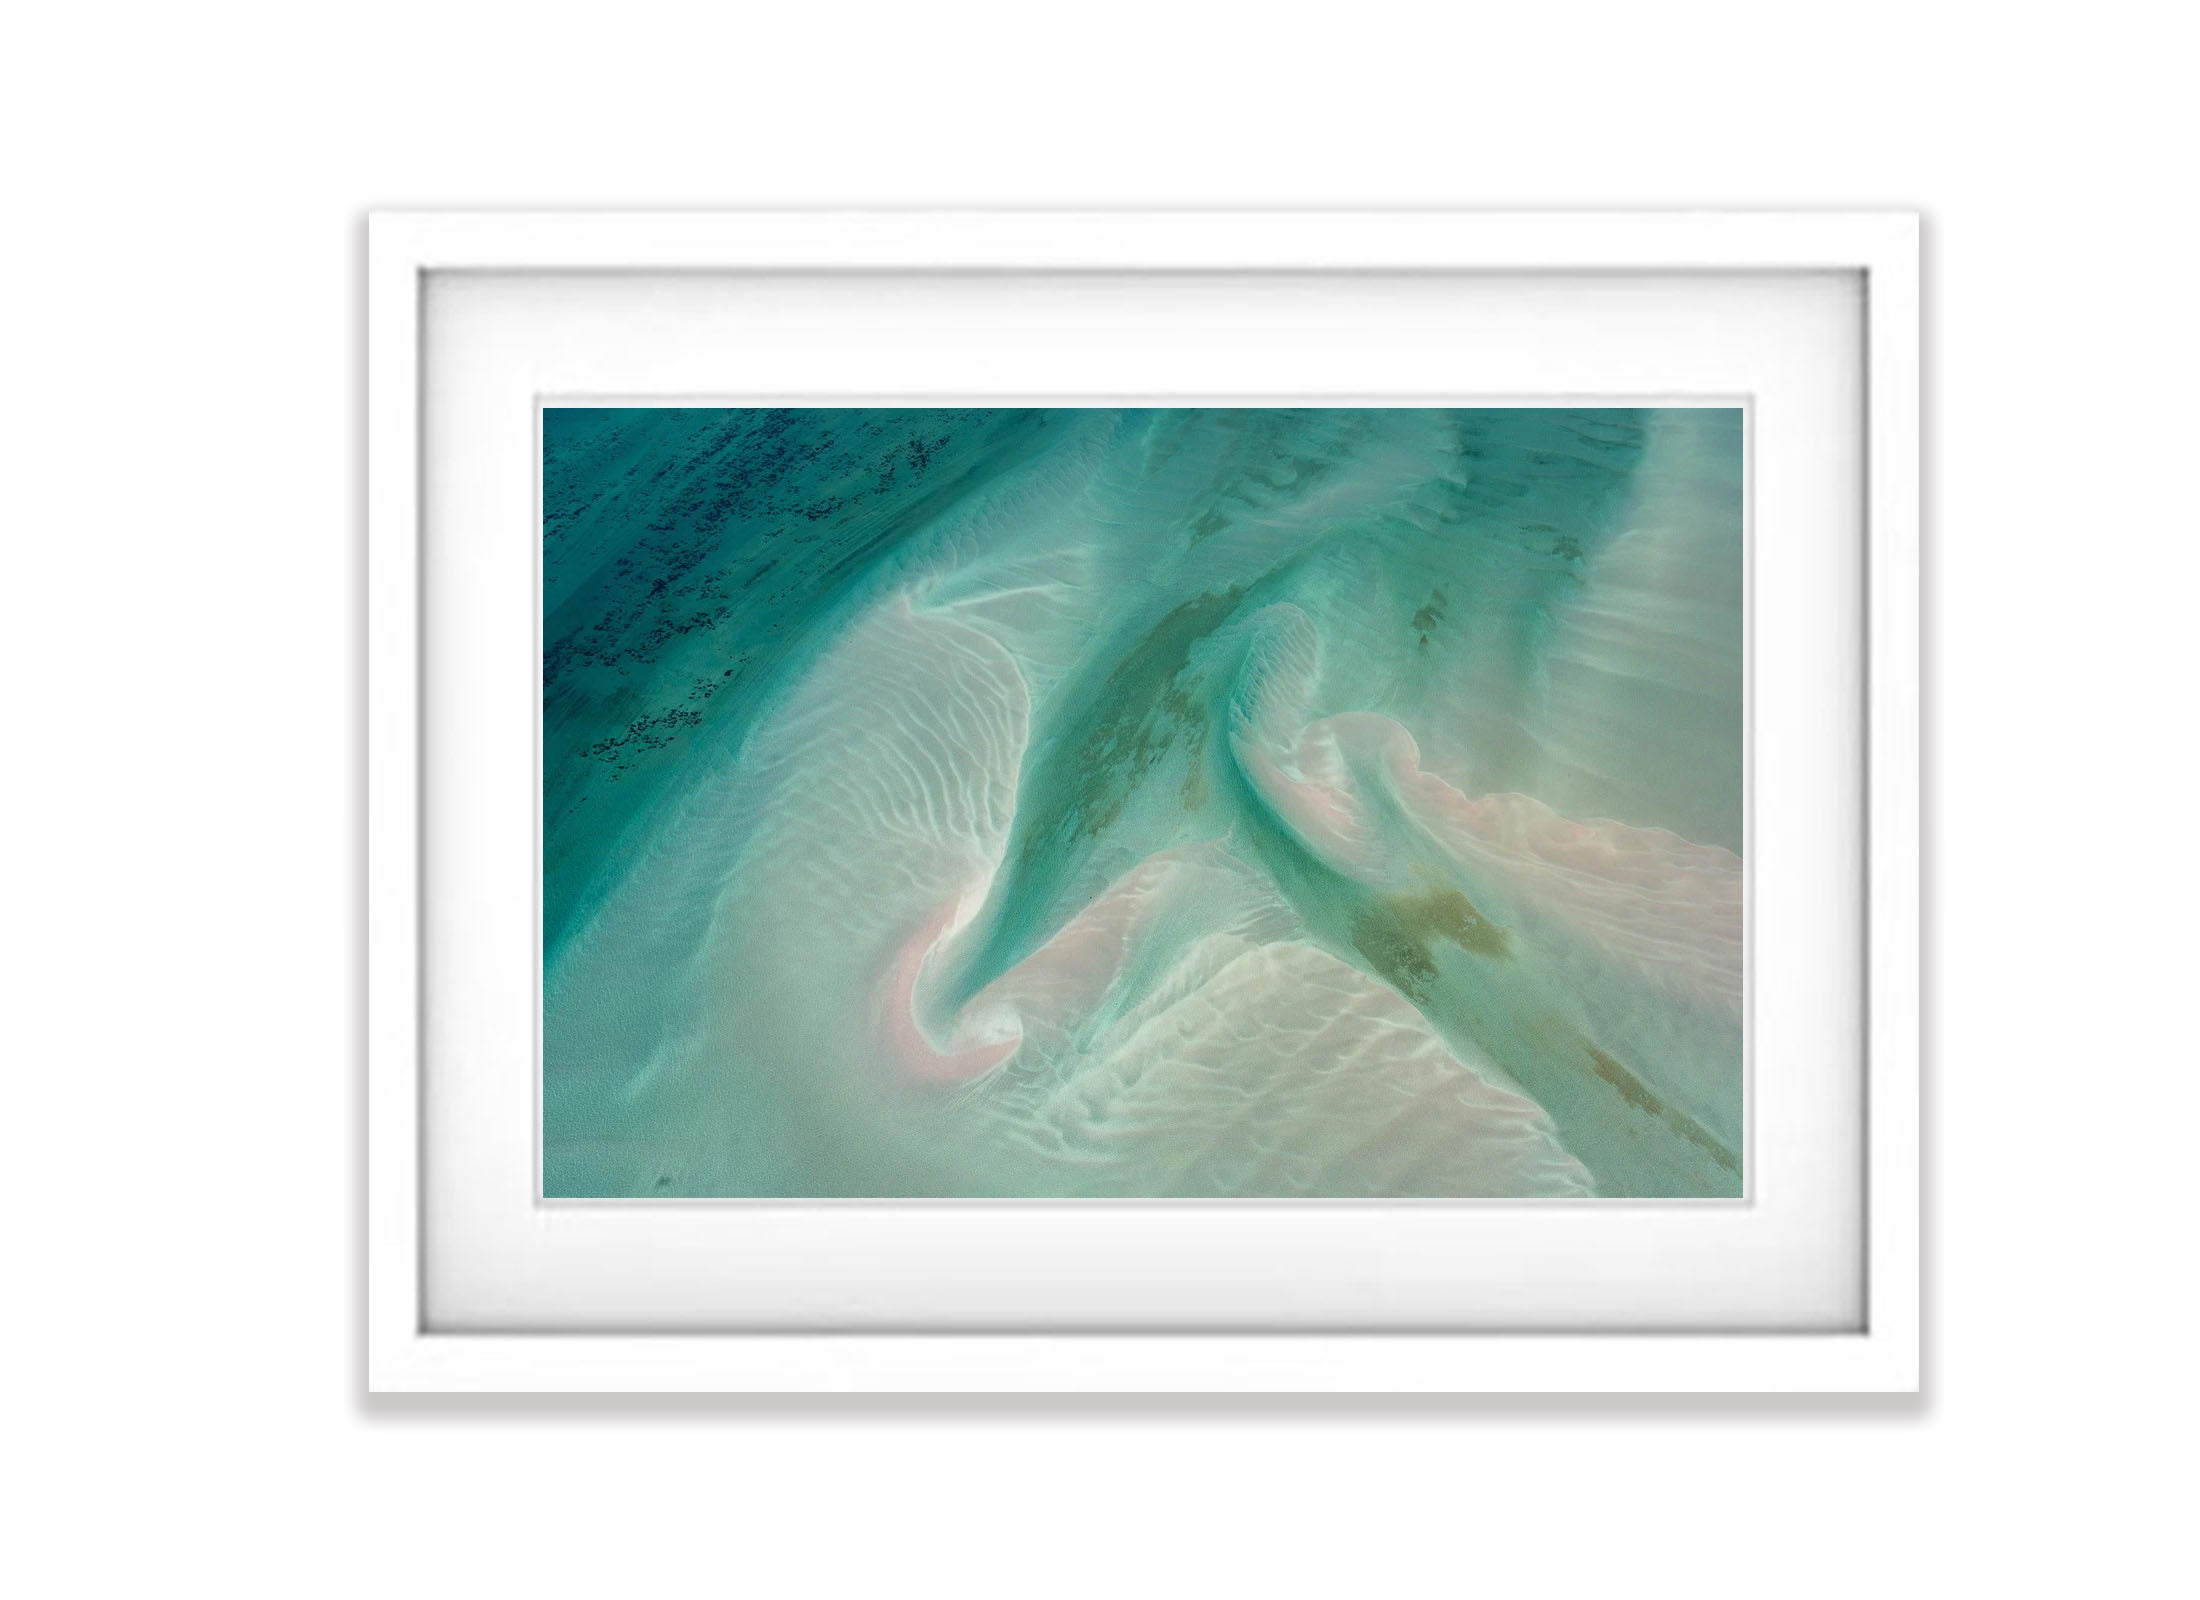 Cuttlefish, Shark Bay, WA Aerial